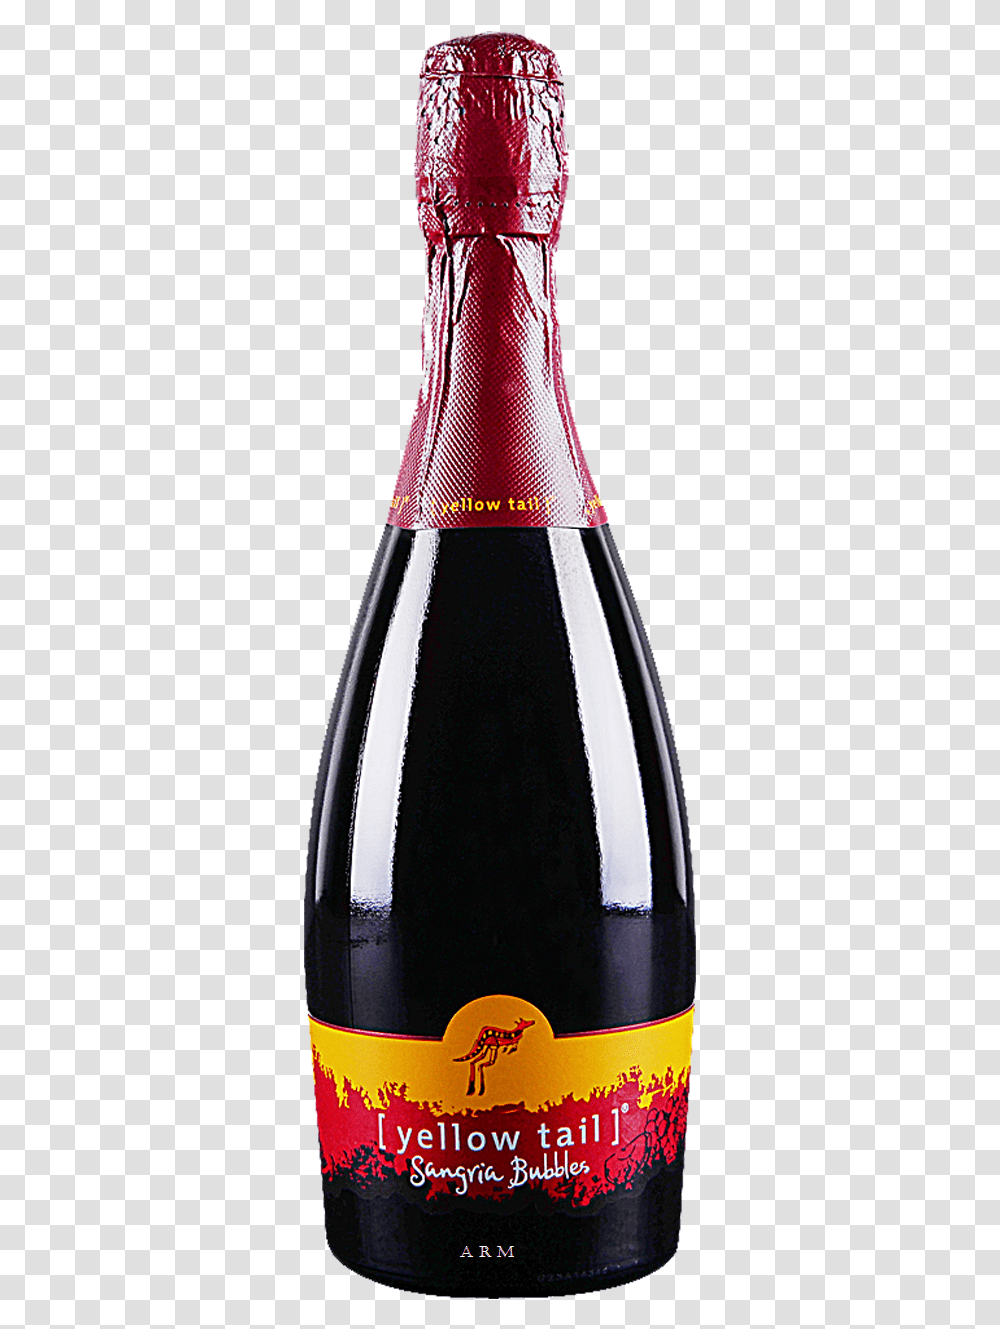 Glass Bottle, Alcohol, Beverage, Red Wine, Label Transparent Png